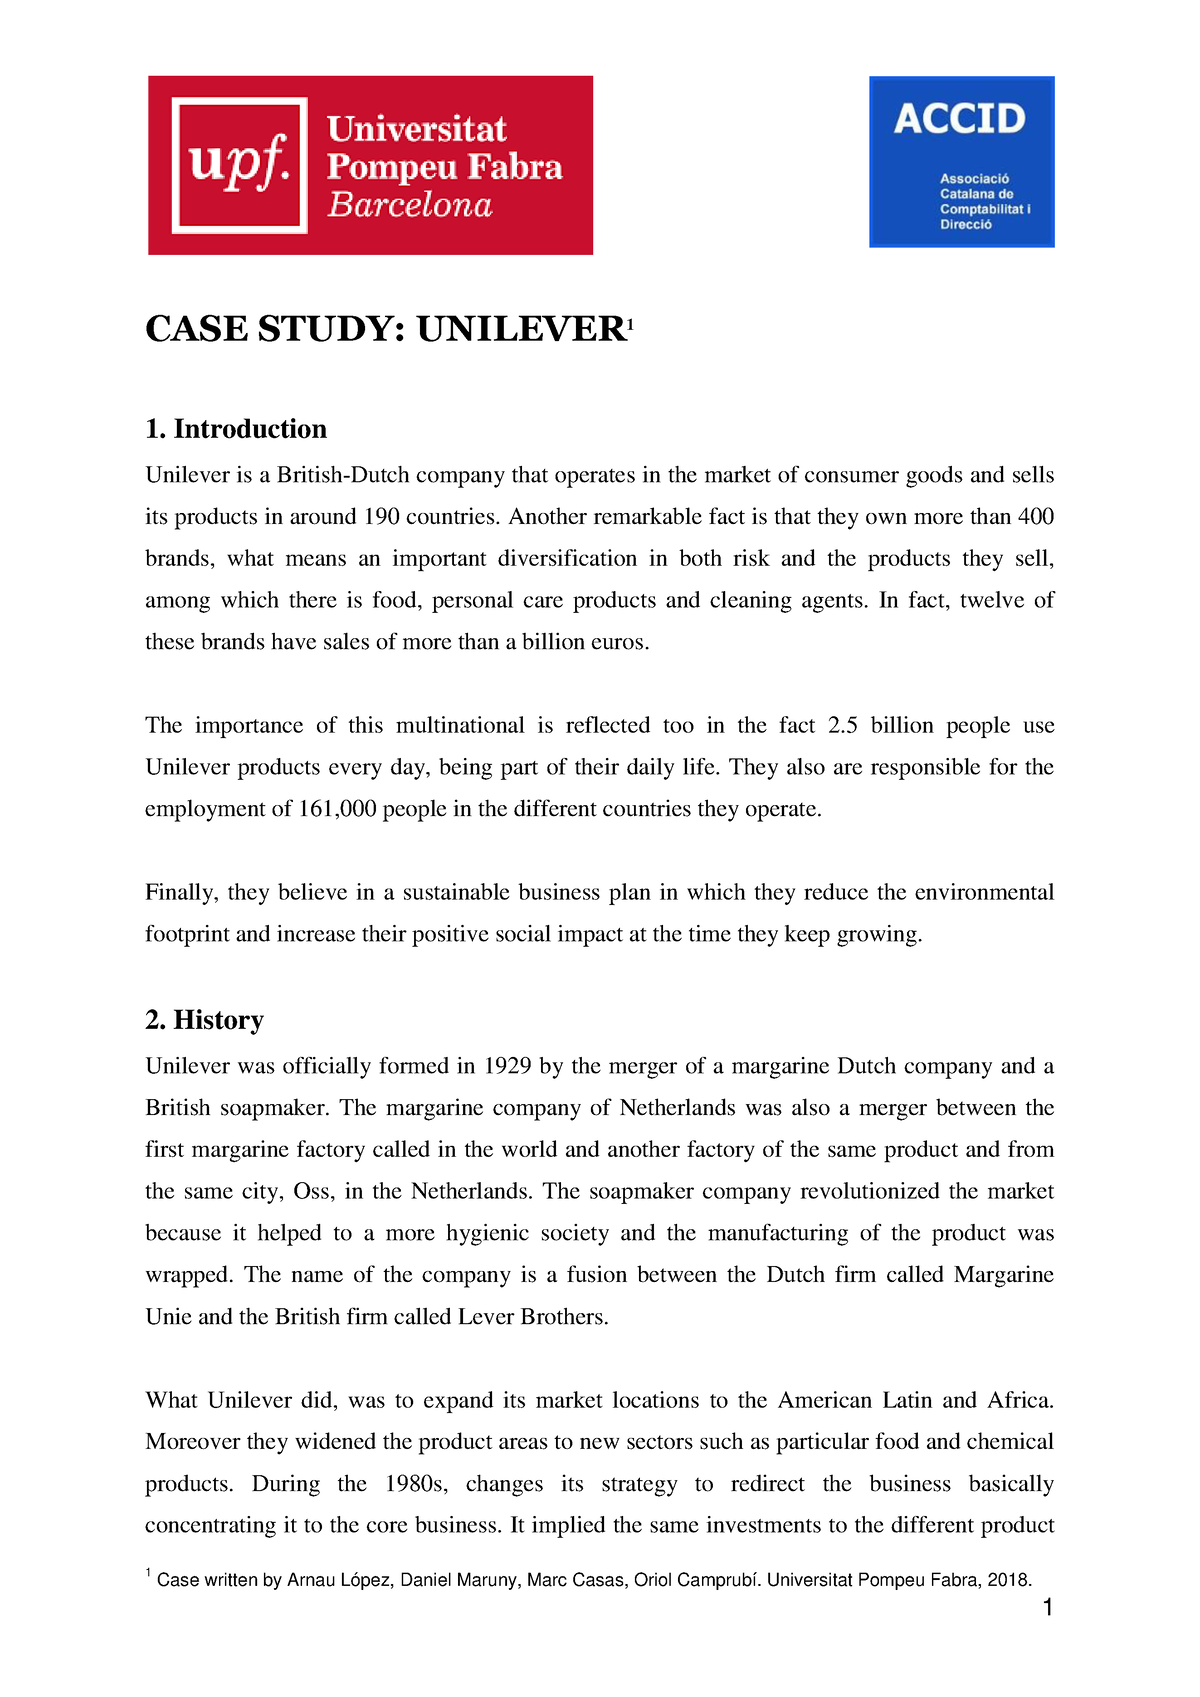 unilever case study summary